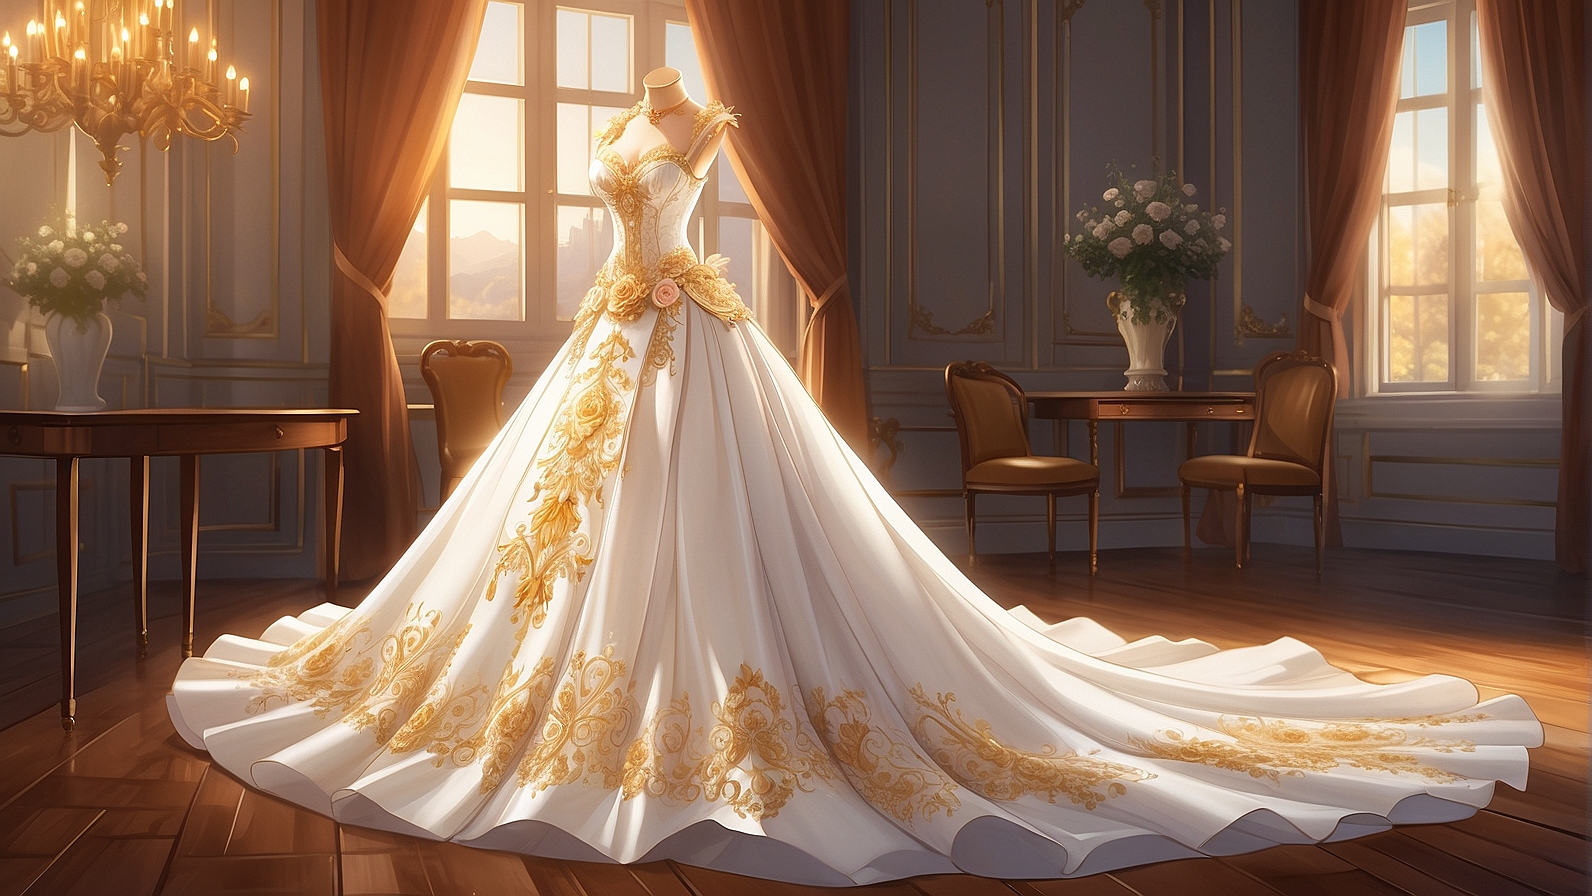 تفسير حلم شراء فستان الزفاف للعزباء في المنام لإبن سيرين